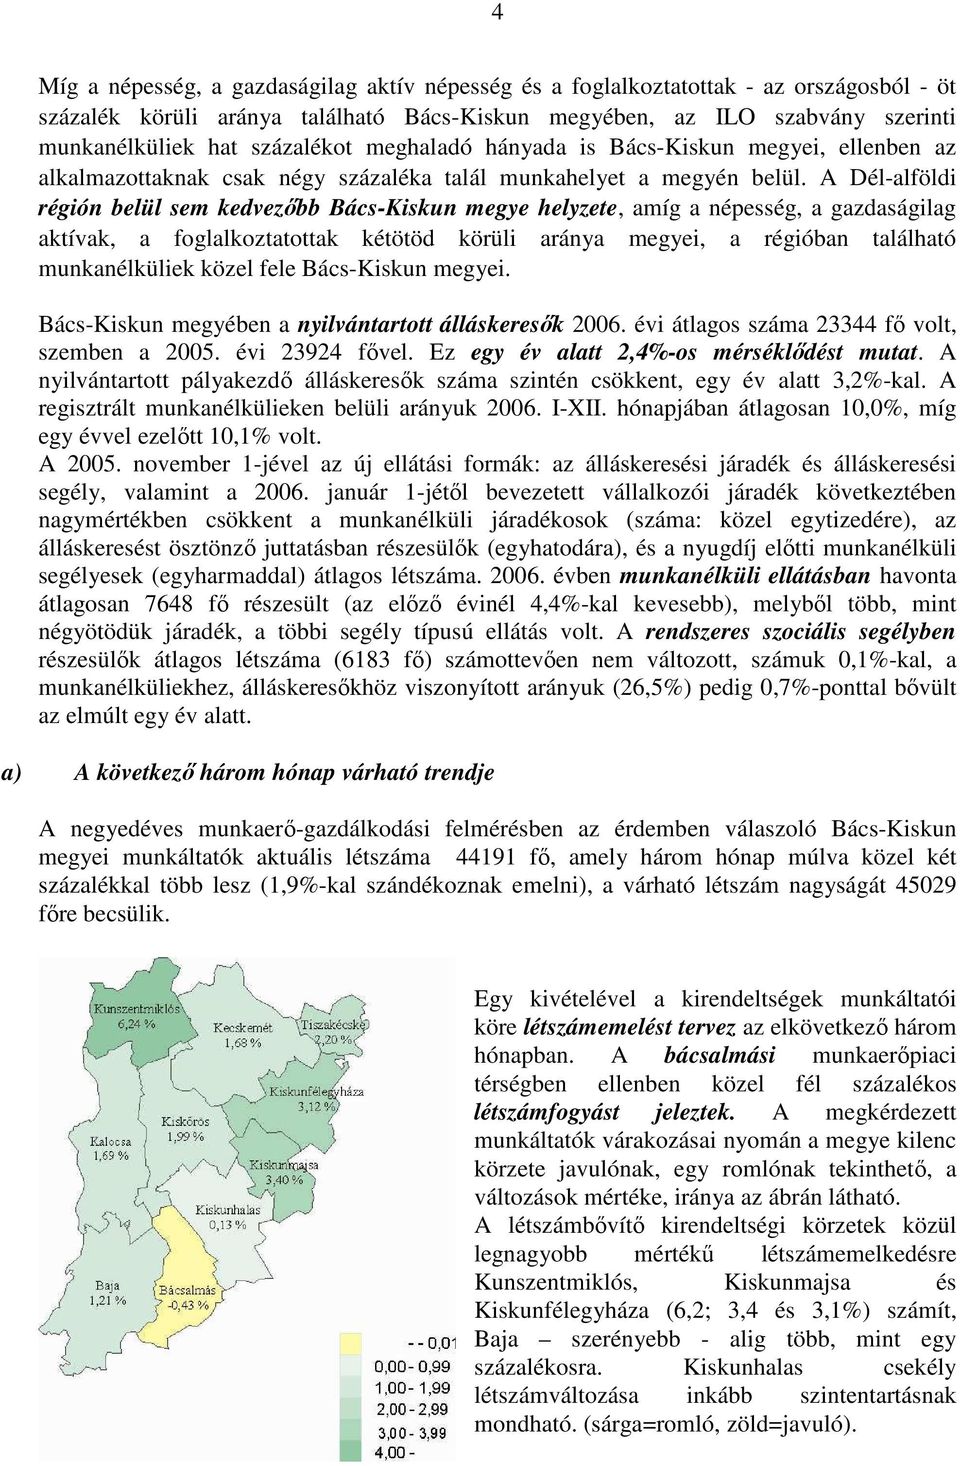 A Dél-alföldi régión belül sem kedvezıbb Bács-Kiskun megye helyzete, amíg a népesség, a gazdaságilag aktívak, a foglalkoztatottak kétötöd körüli aránya megyei, a régióban található munkanélküliek